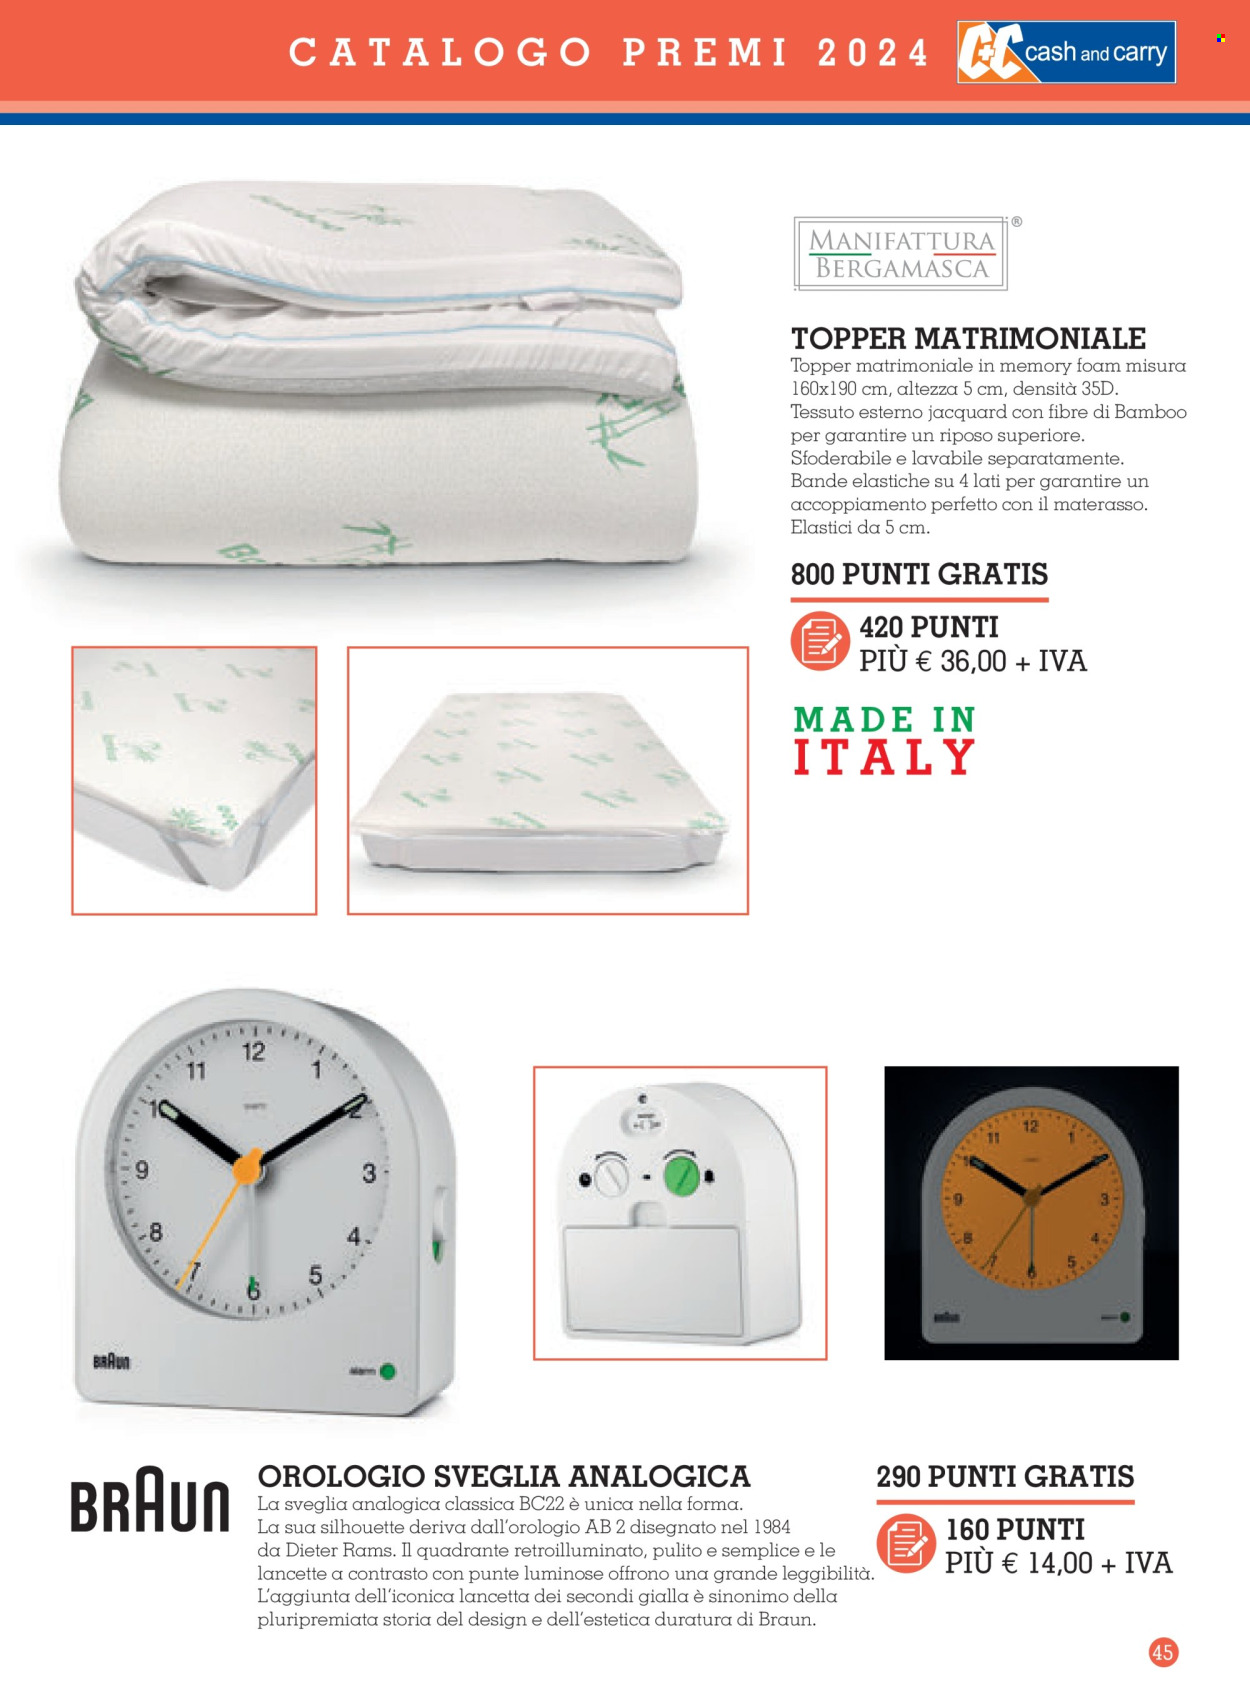 thumbnail - Volantino C+C Cash & Carry - 11/3/2024 - 2/2/2025 - Prodotti in offerta - materasso, orologio, topper, Braun. Pagina 45.